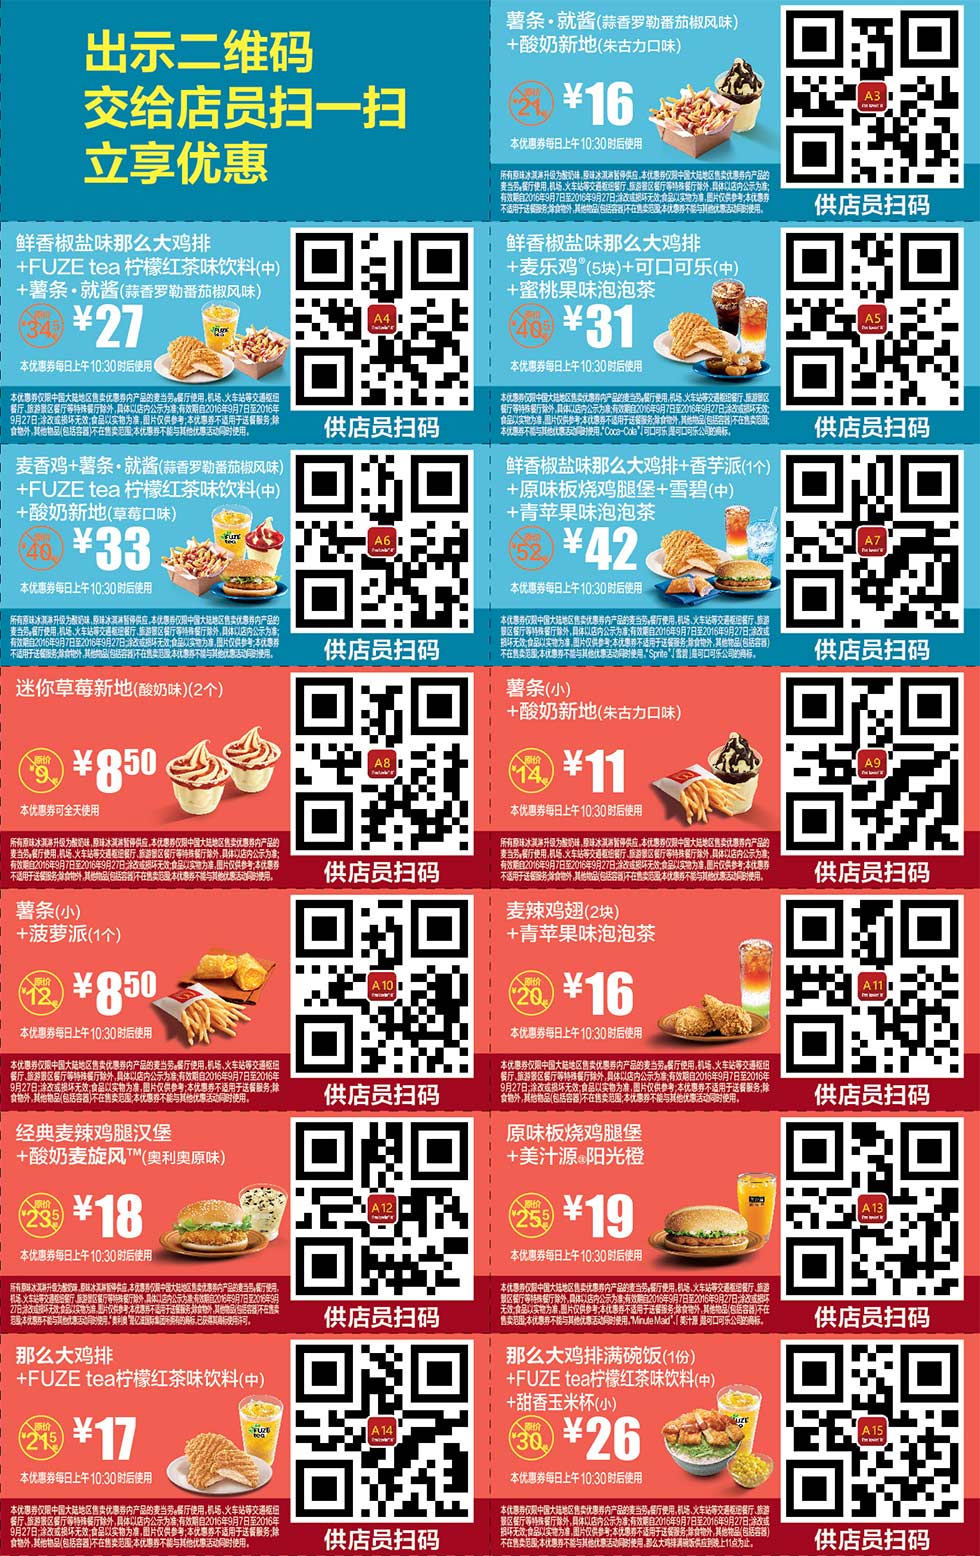 2016年9月份麦当劳优惠券手机版整张版本，出示二维码立享优惠 有效期至：2016年9月27日 www.5ikfc.com